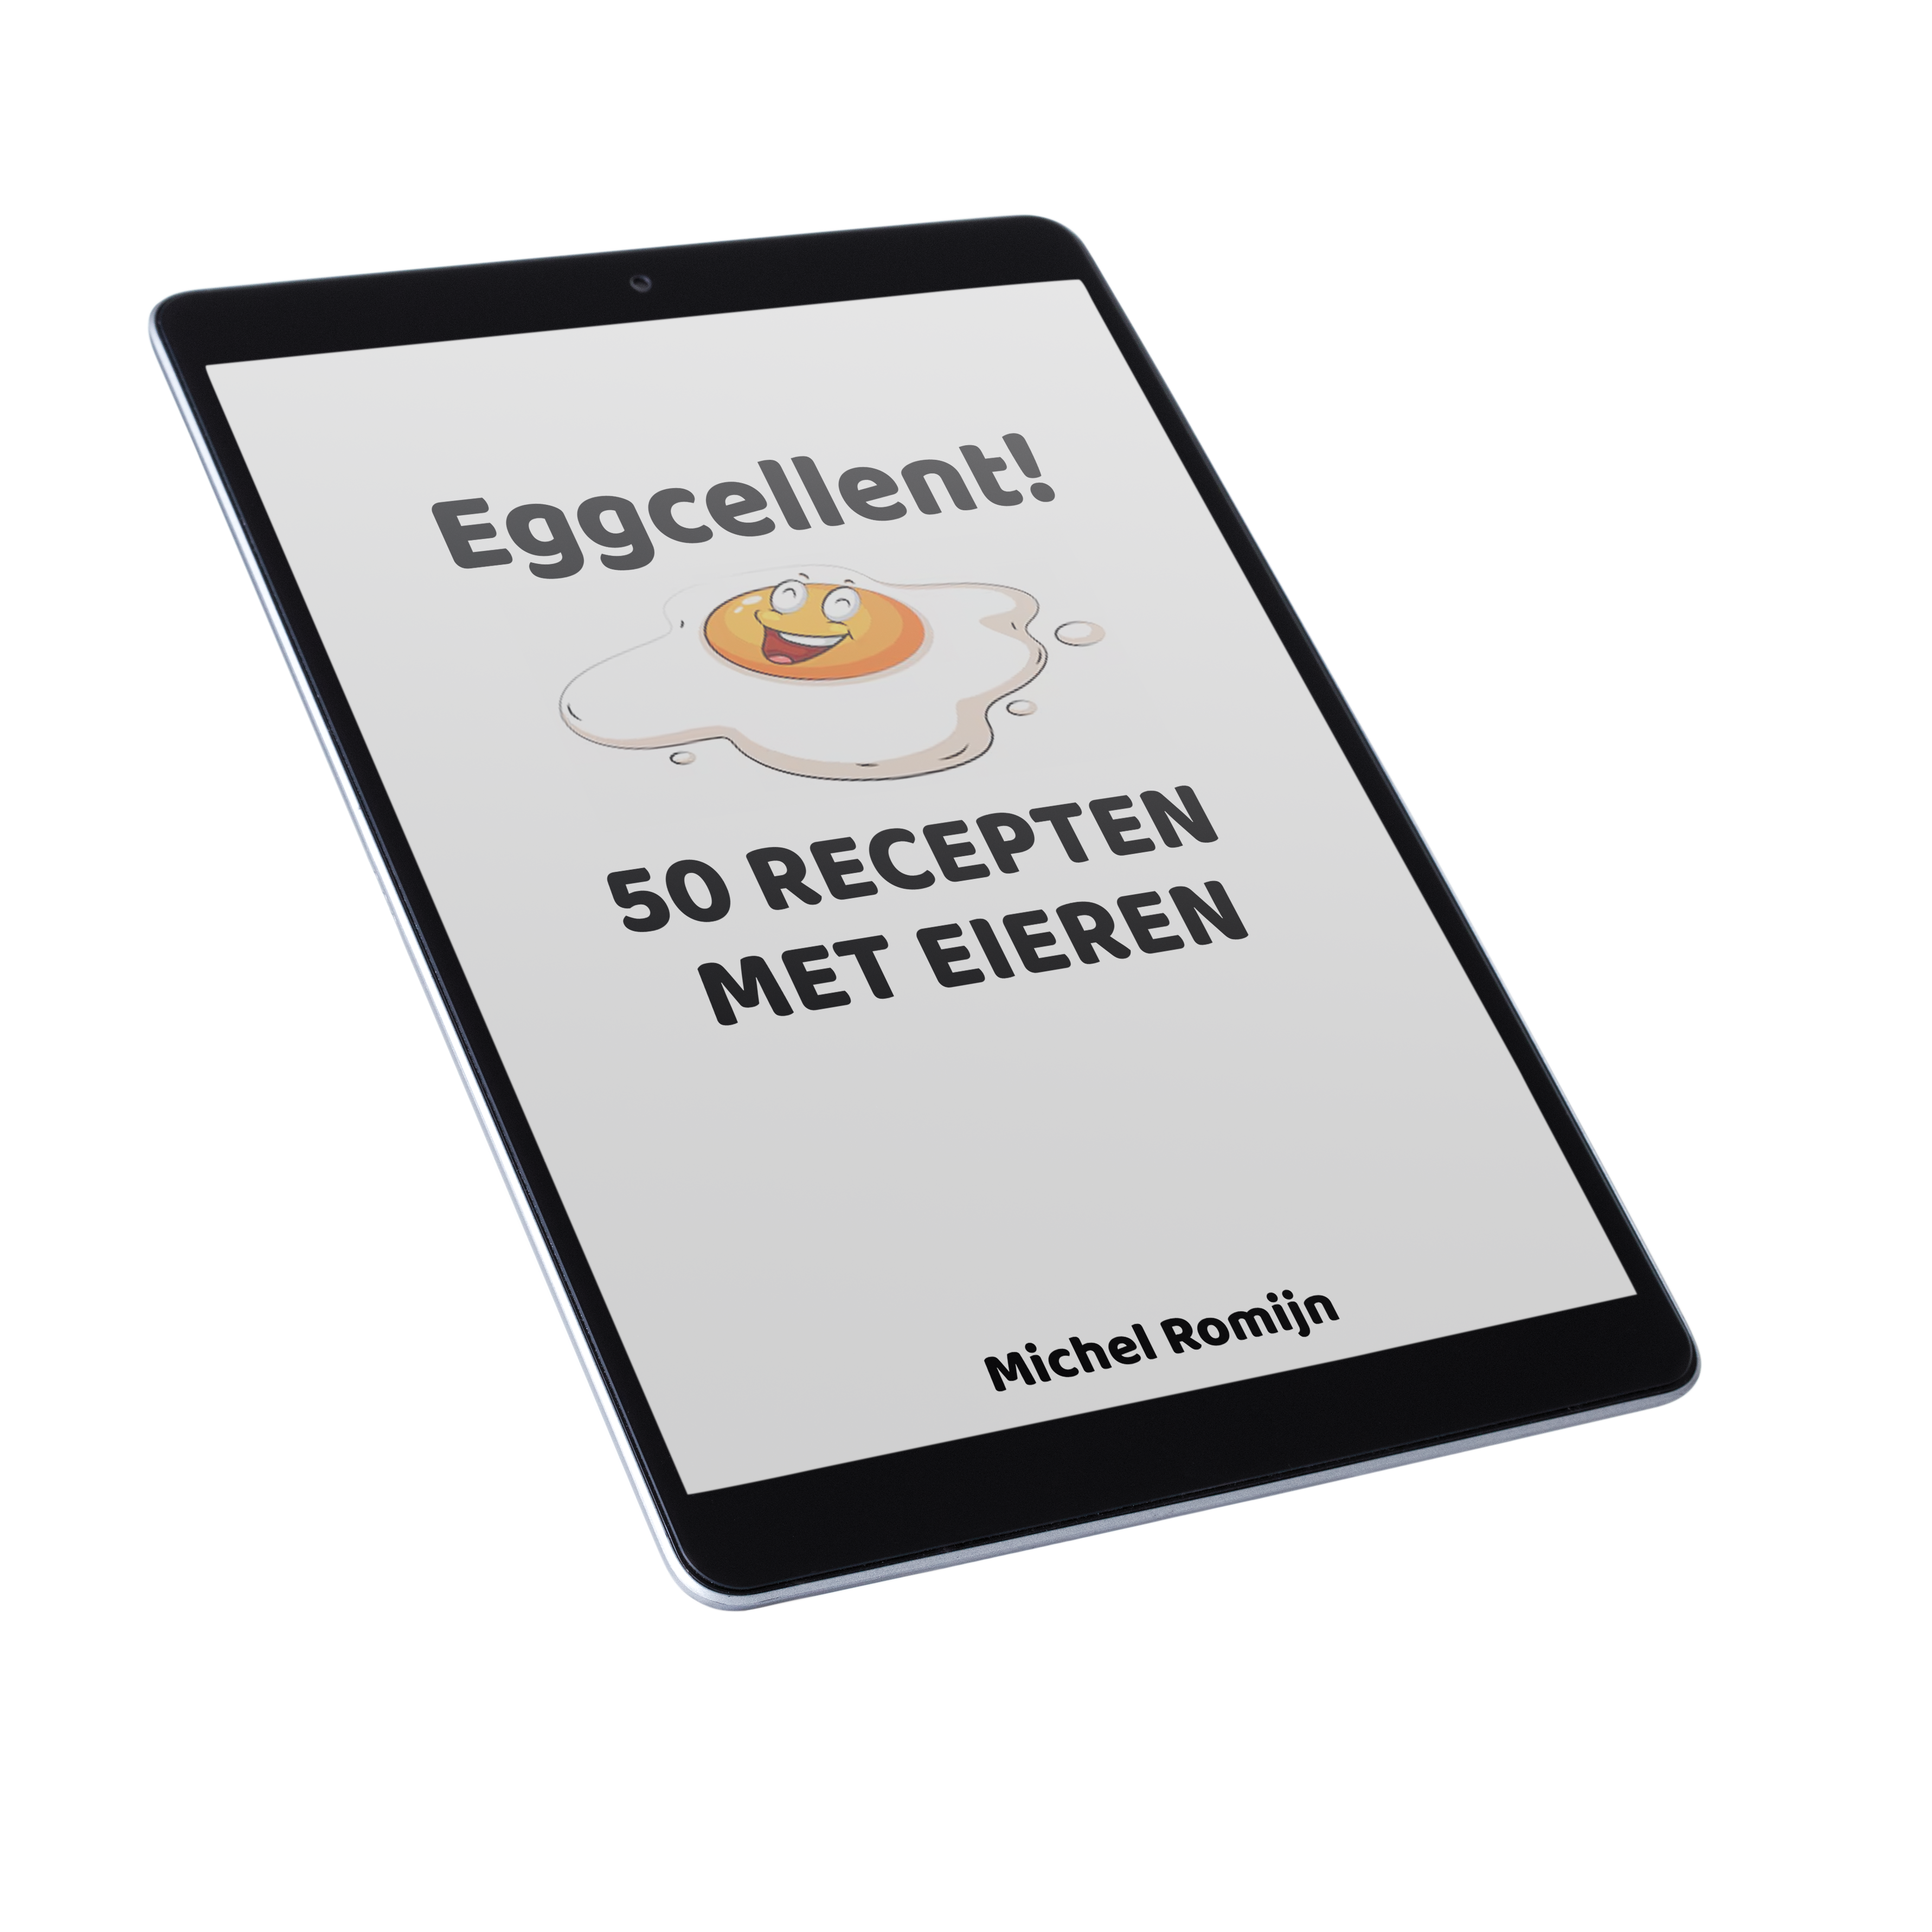 Ontdek “Eggcellent – 50 recepten met eieren”